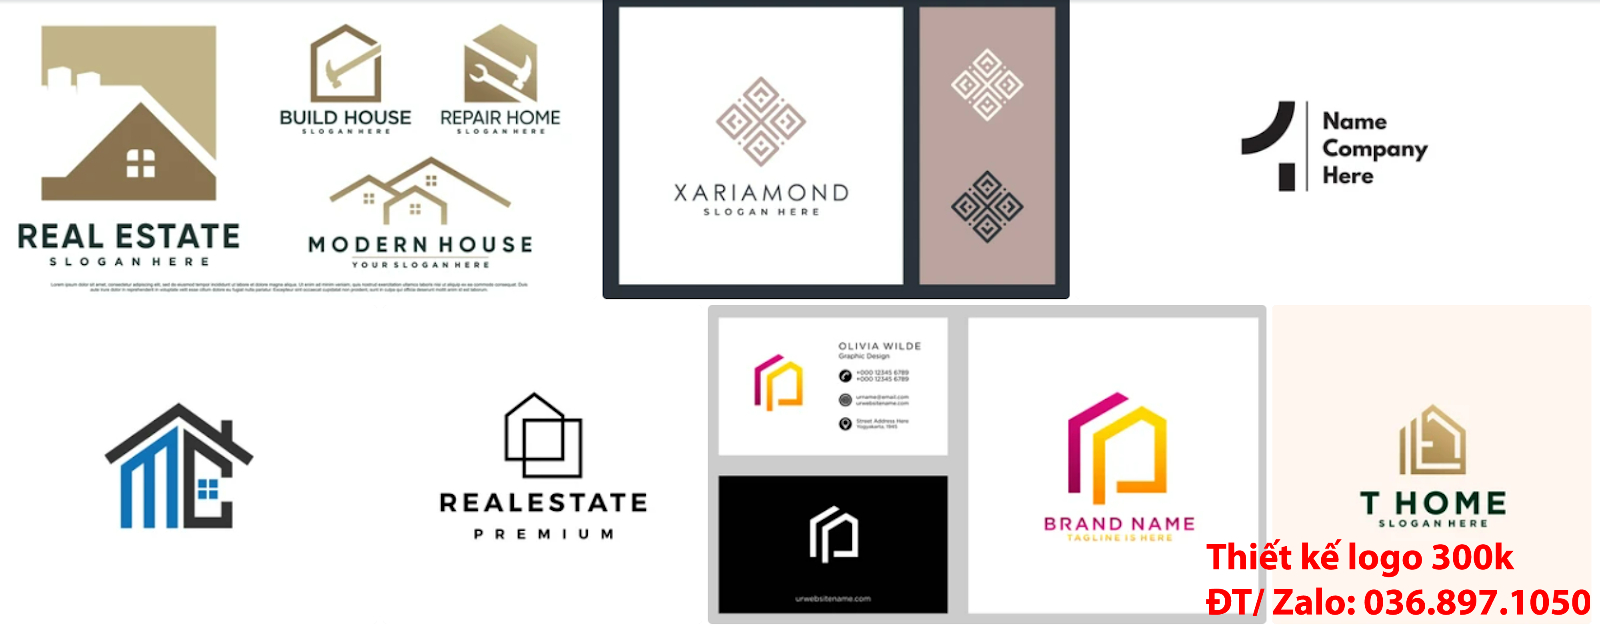 Dịch vụ làm mẫu thiết kế logo công ty kiến trúc đẹp nhất hiện nay online tại Hà Nội